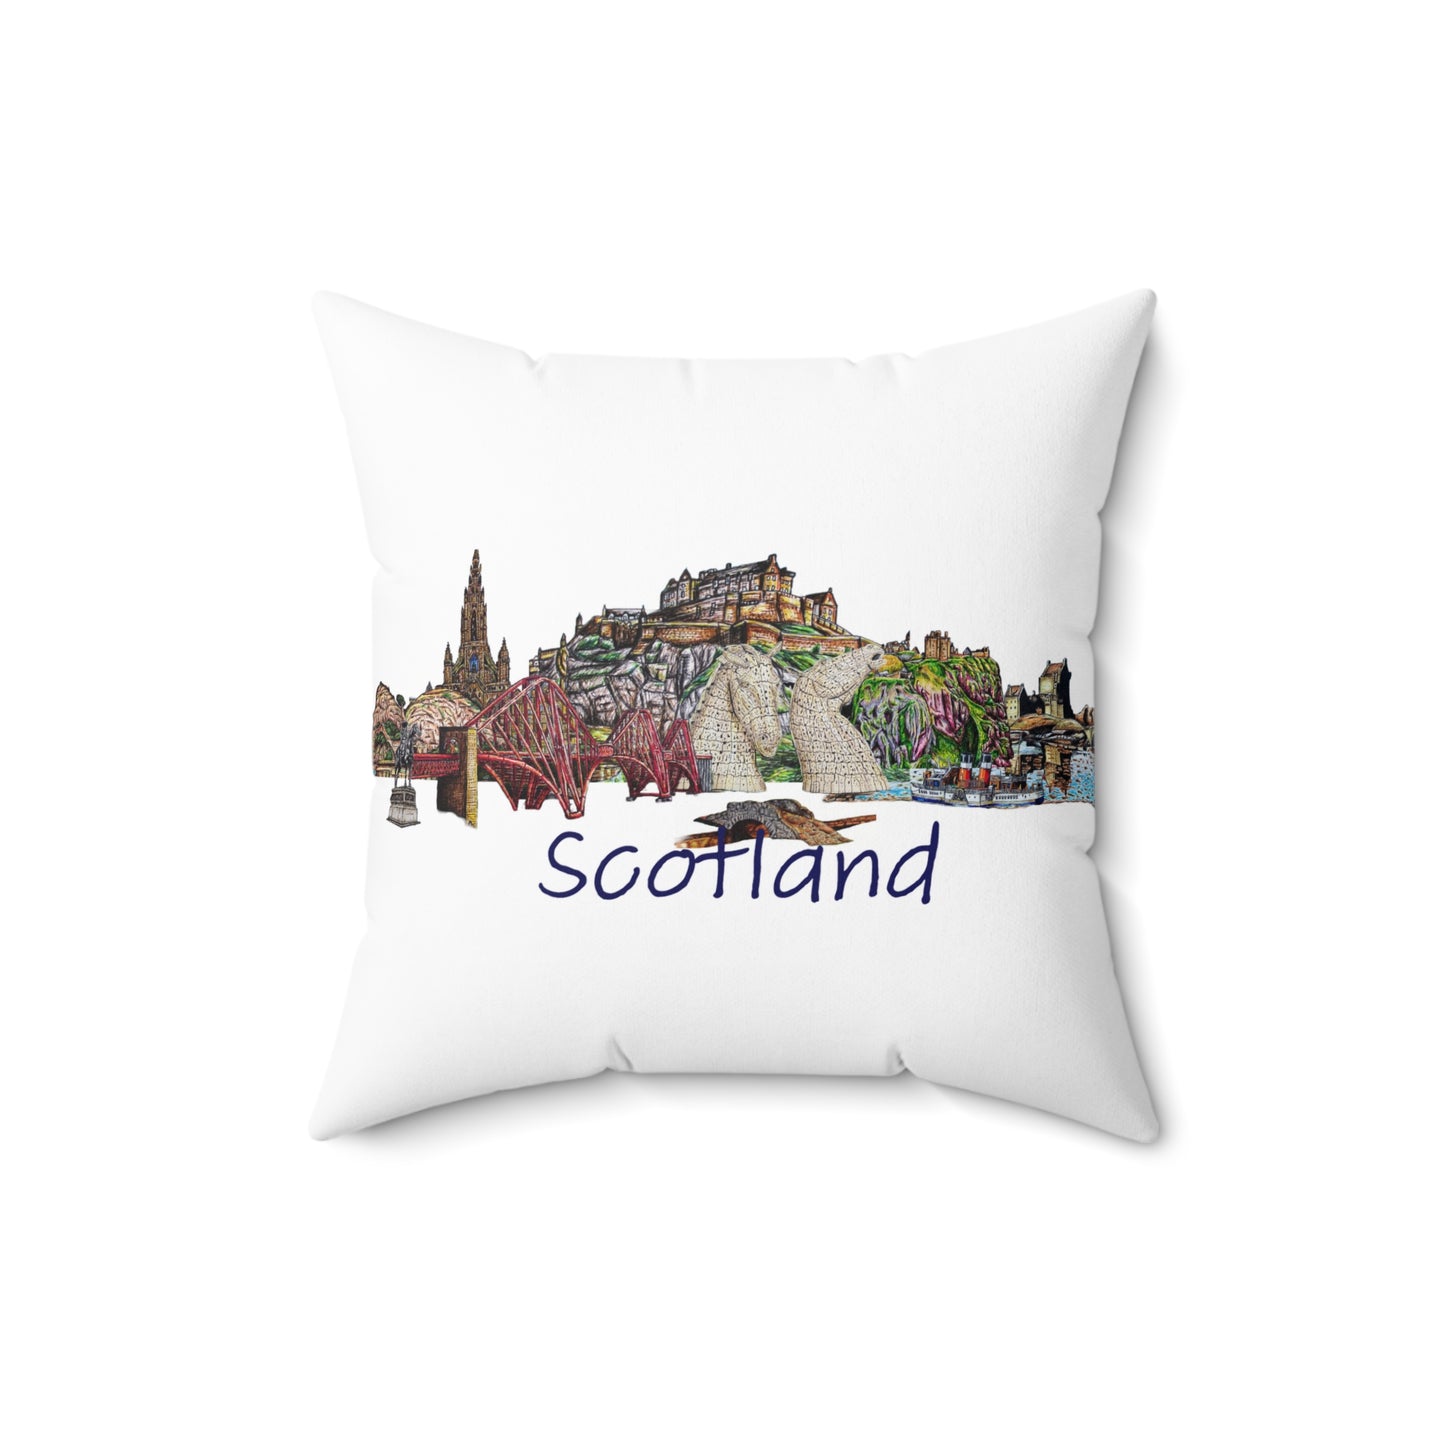 Indoor decorative cushion- Scotland Design